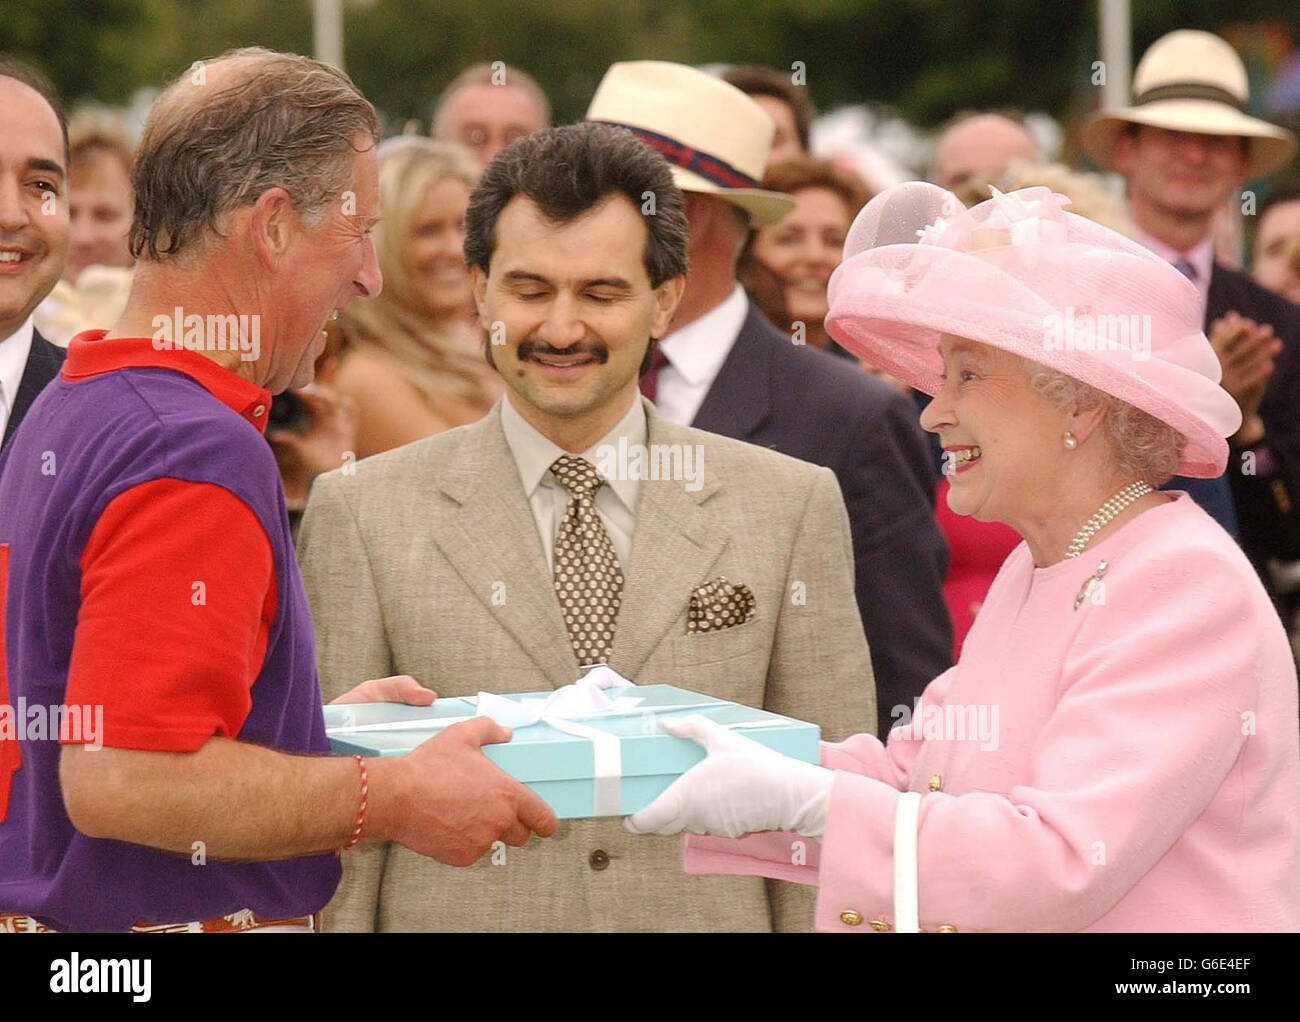 Royal Polo - Le Prince Charles et la Reine Banque D'Images